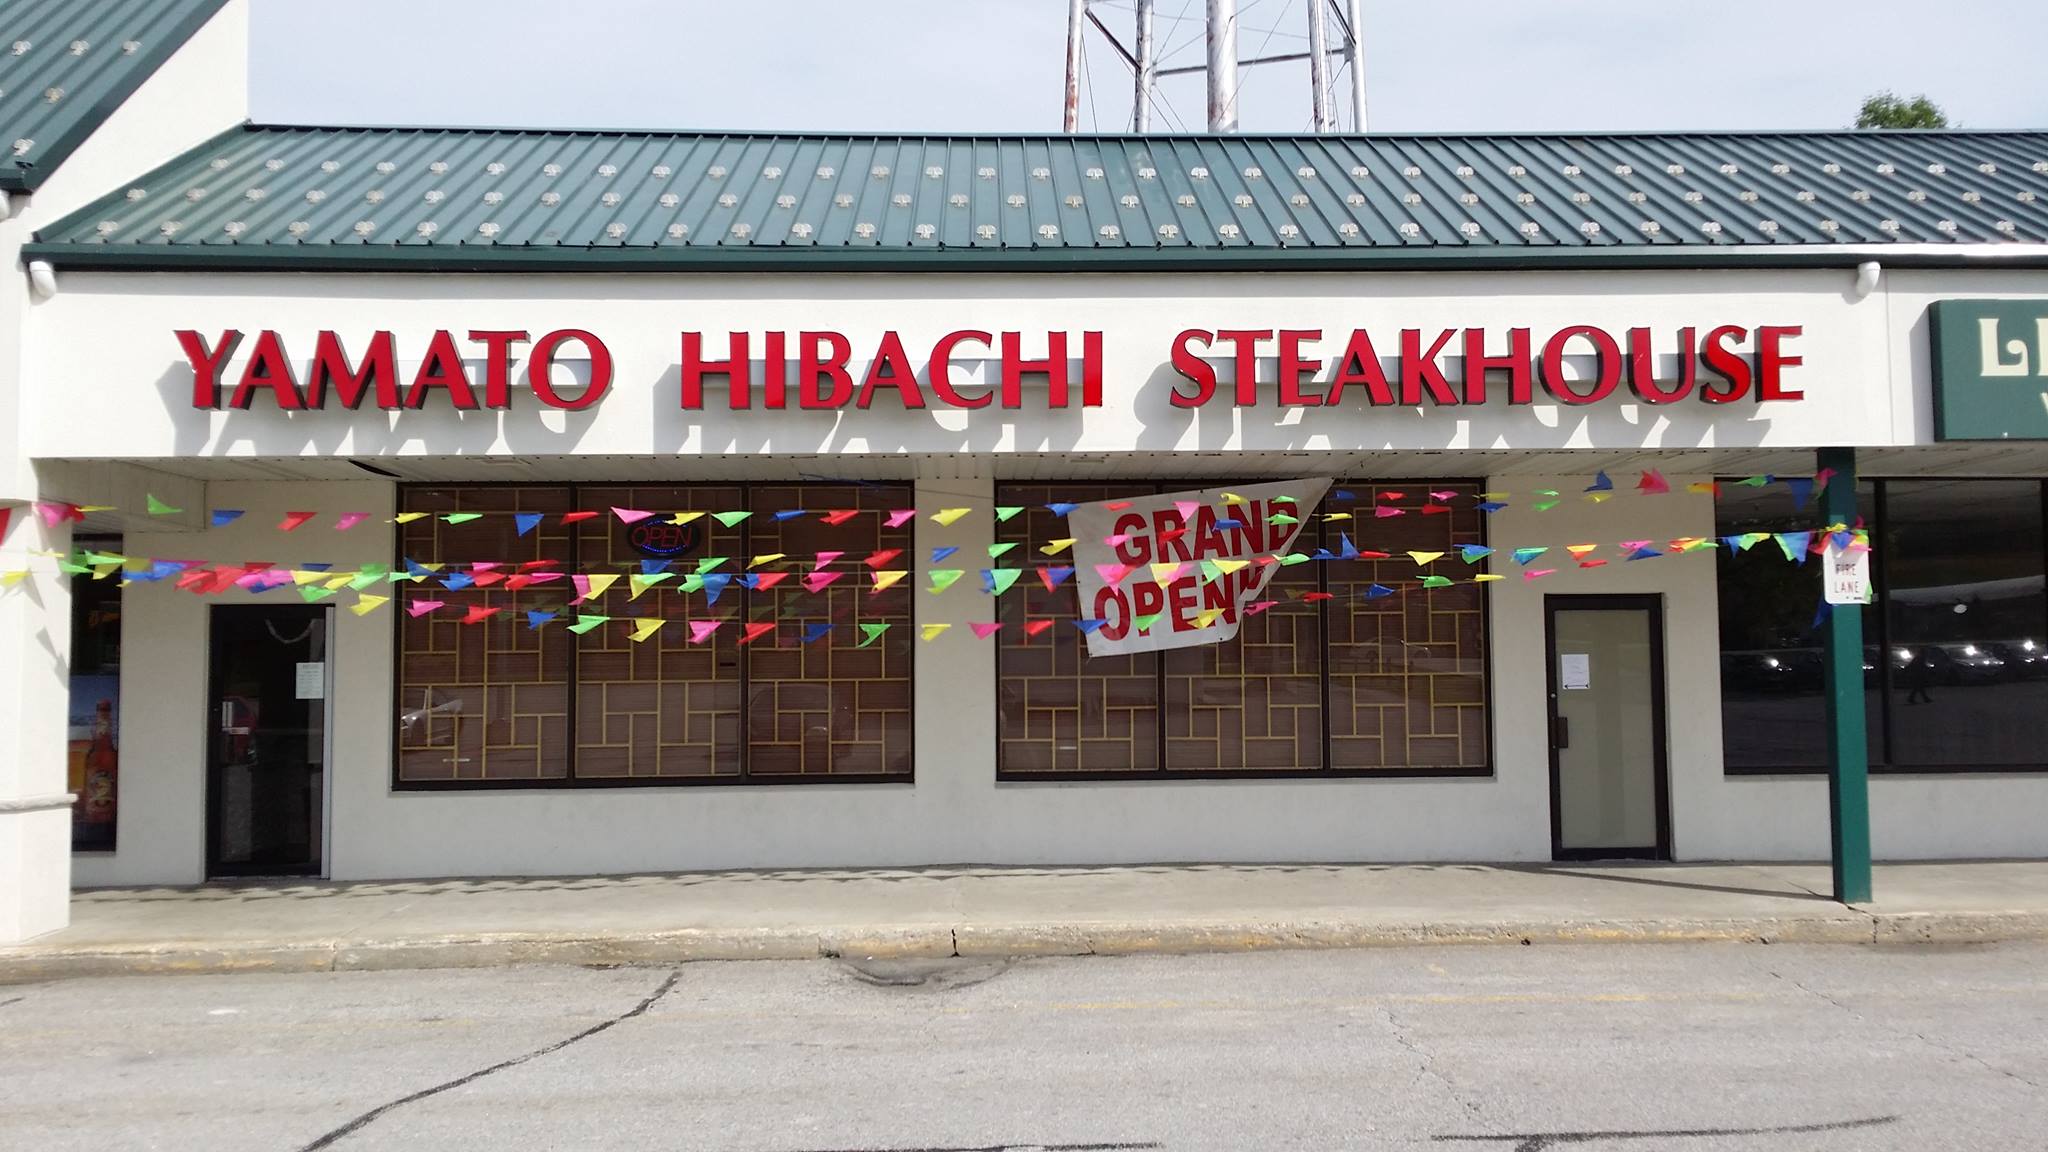 Yamato Hibachi Steakhouse